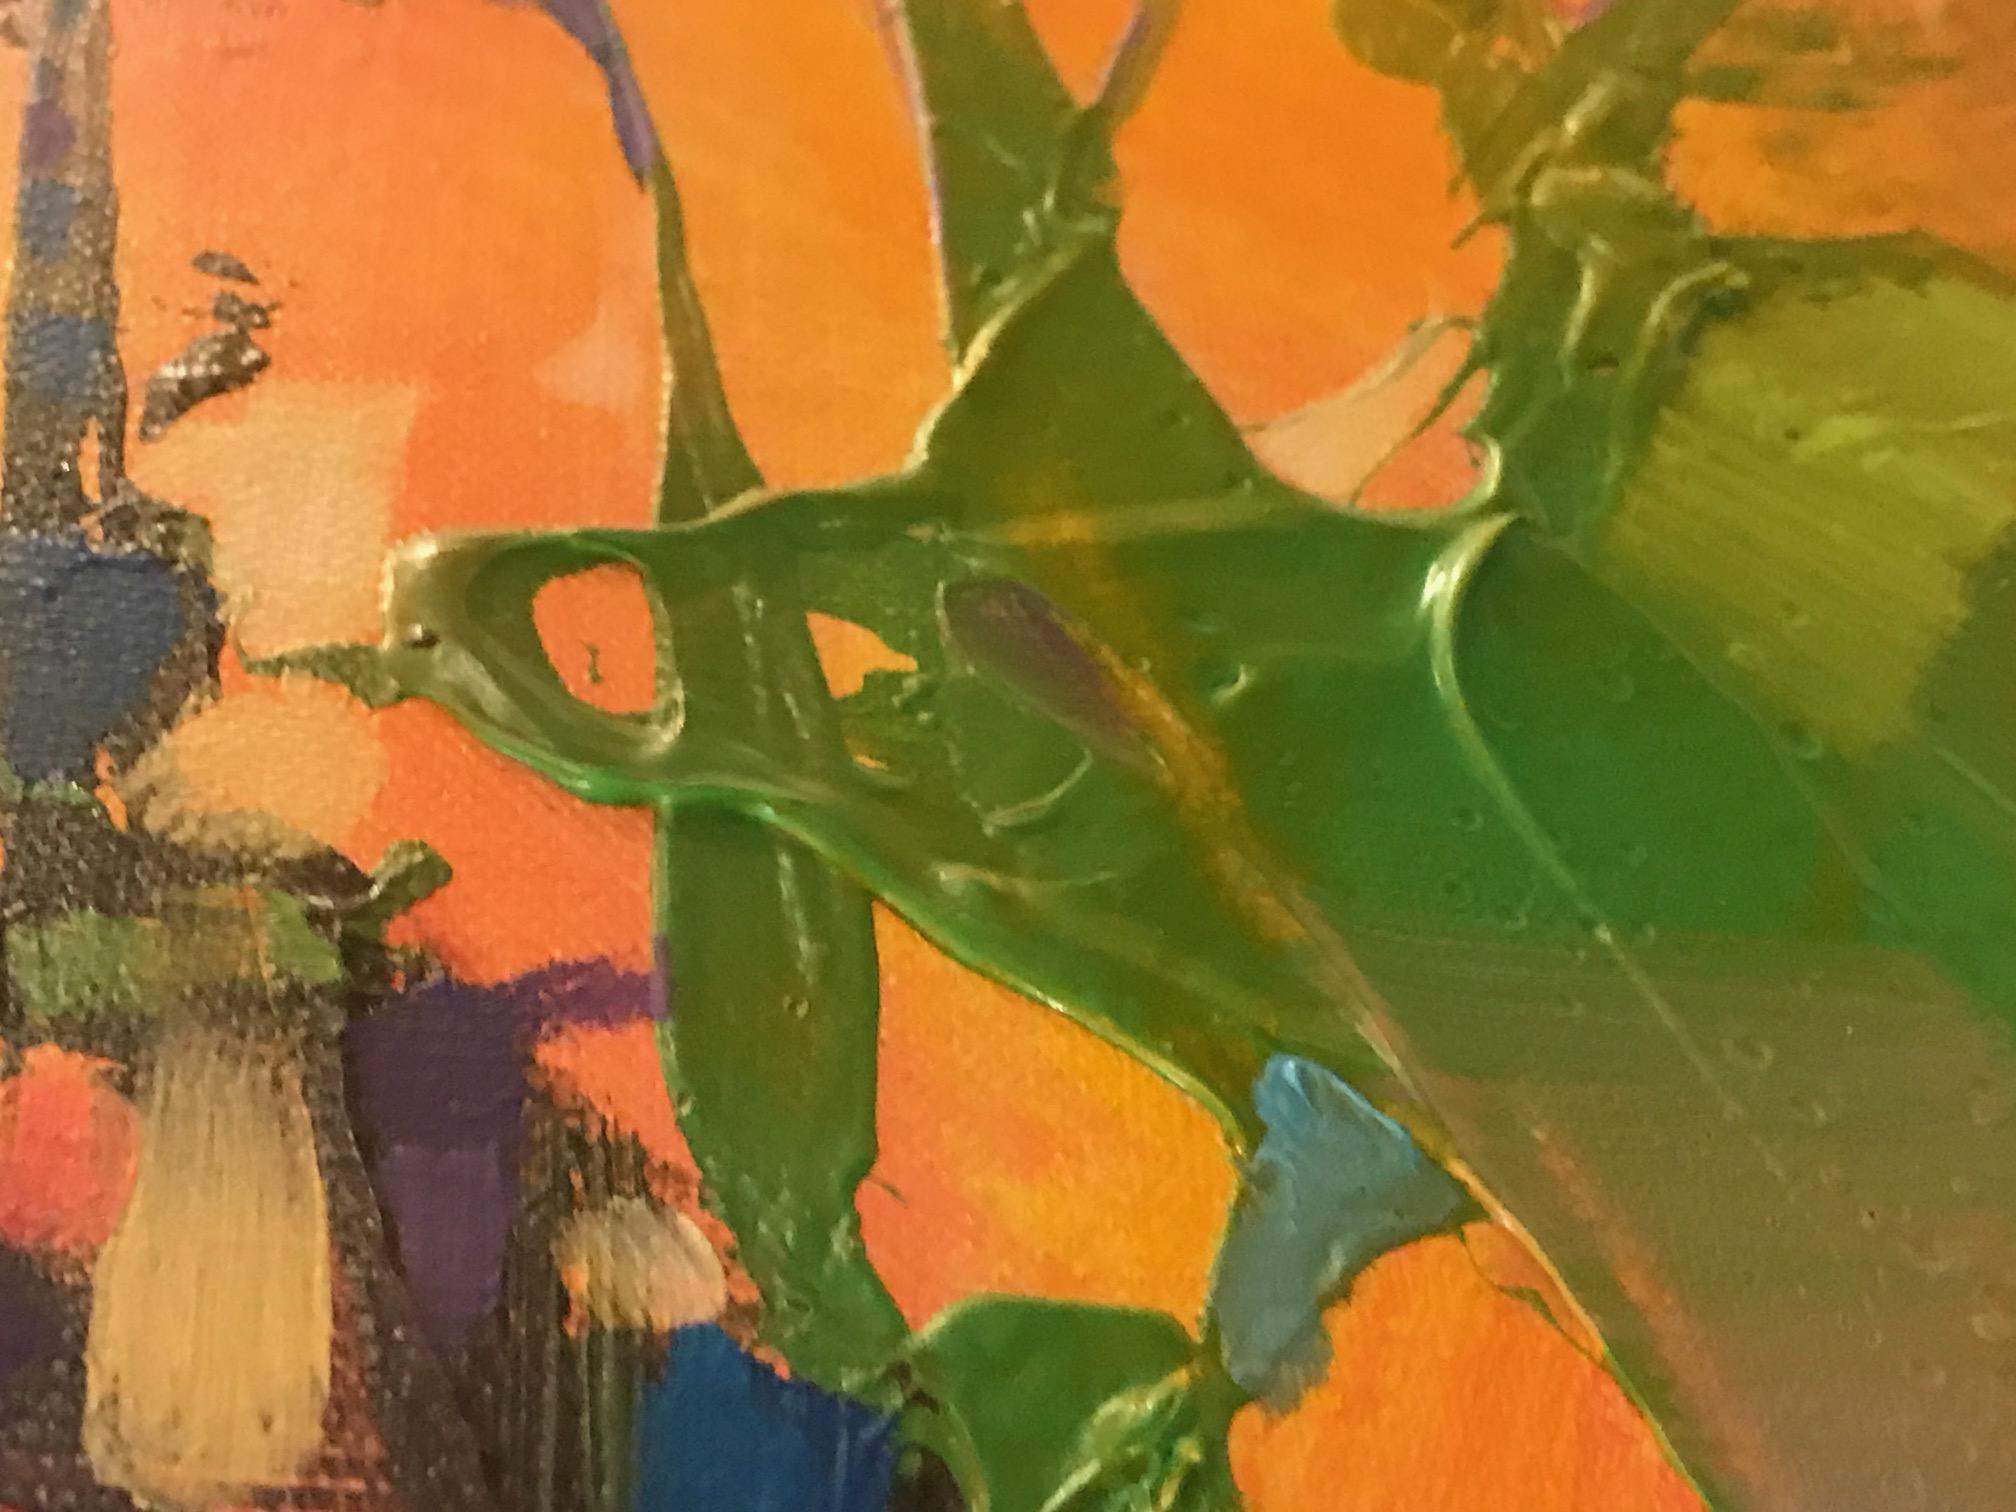 Scott Naismith
Fragmente von oben
Original-Mischtechnik-Gemälde
Ölfarbe, Acrylfarbe und Sprühfarbe auf Leinenleinwand
Leinwand Größe: H 100cm x B 100cm x T 3cm
Gerahmt Größe: H 110cm x B 110cm x T 4,5cm
Das Gemälde wurde vom Künstler, Scott